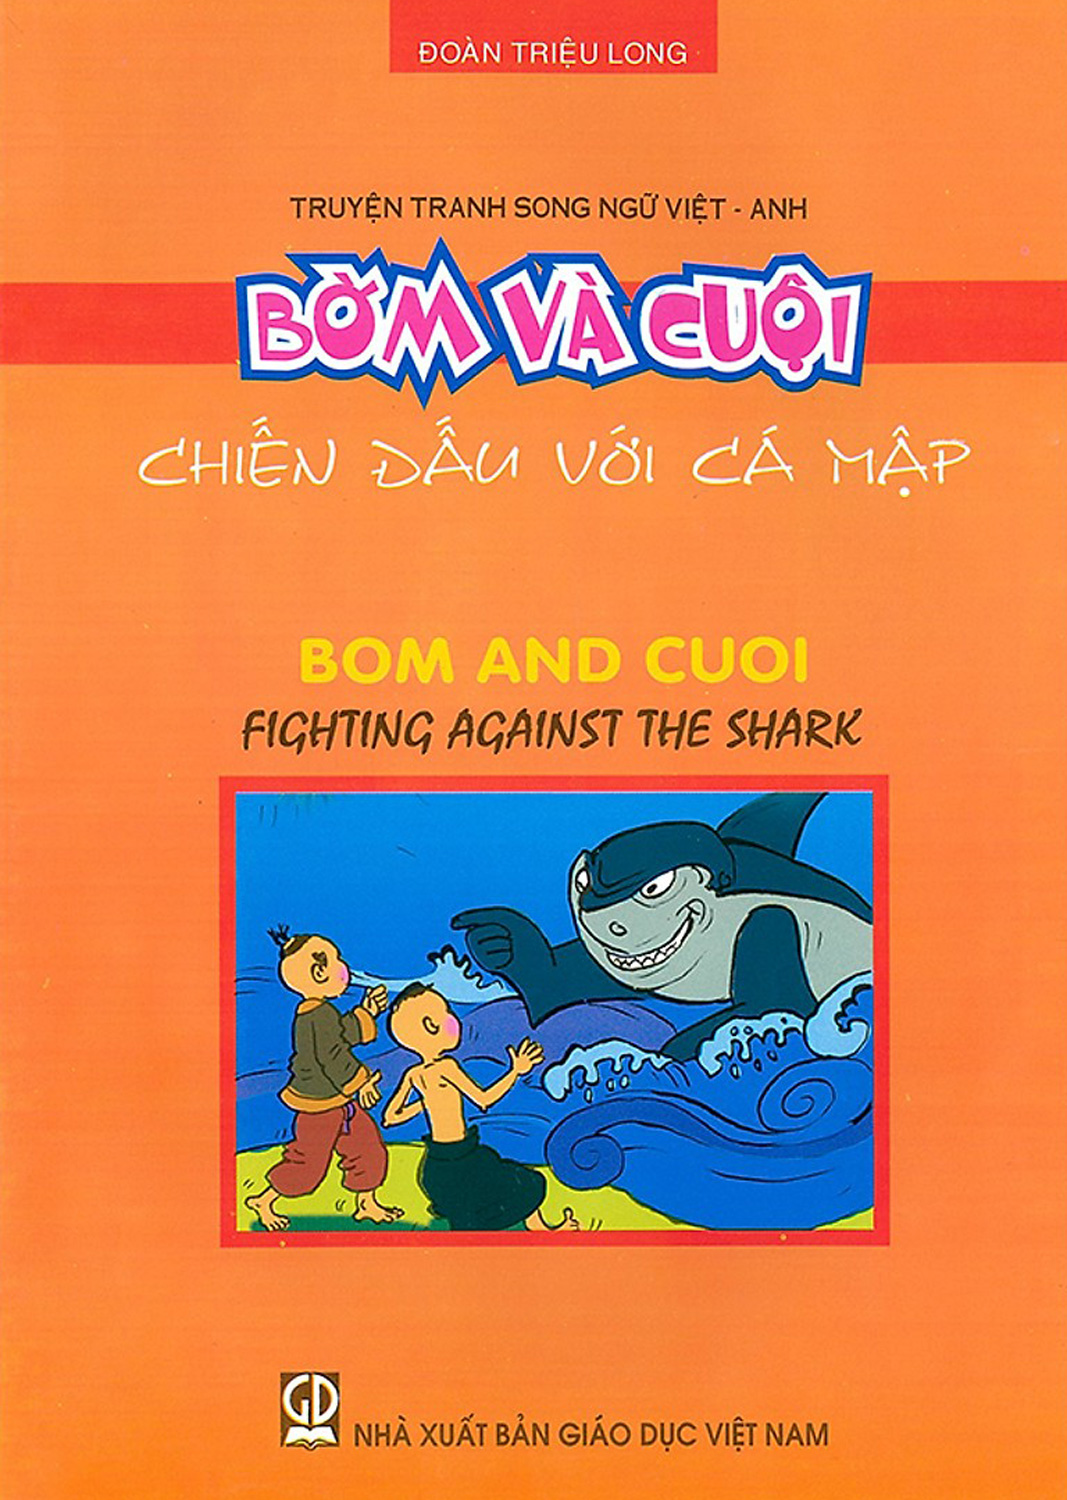 Truyện Tranh Song Ngữ Việt - Anh Bờm Và Cuội - Chiến Đấu Với Cá Mập